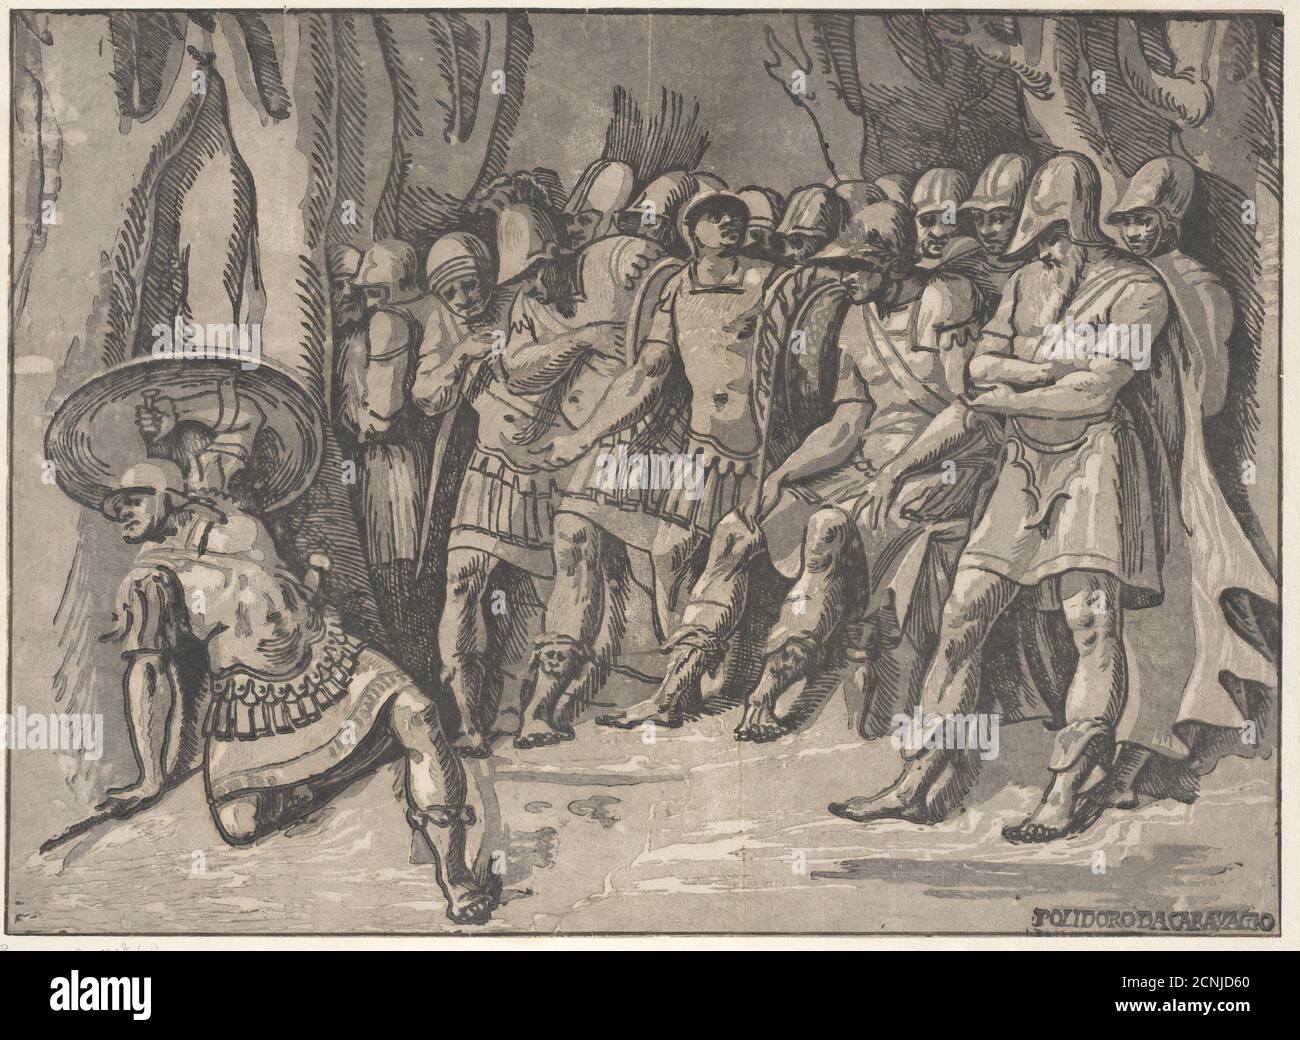 Ajax unten links hält einen Schild hoch, rechts steht Agamemnon umgeben von seinen Soldaten, 1540-50. Stockfoto